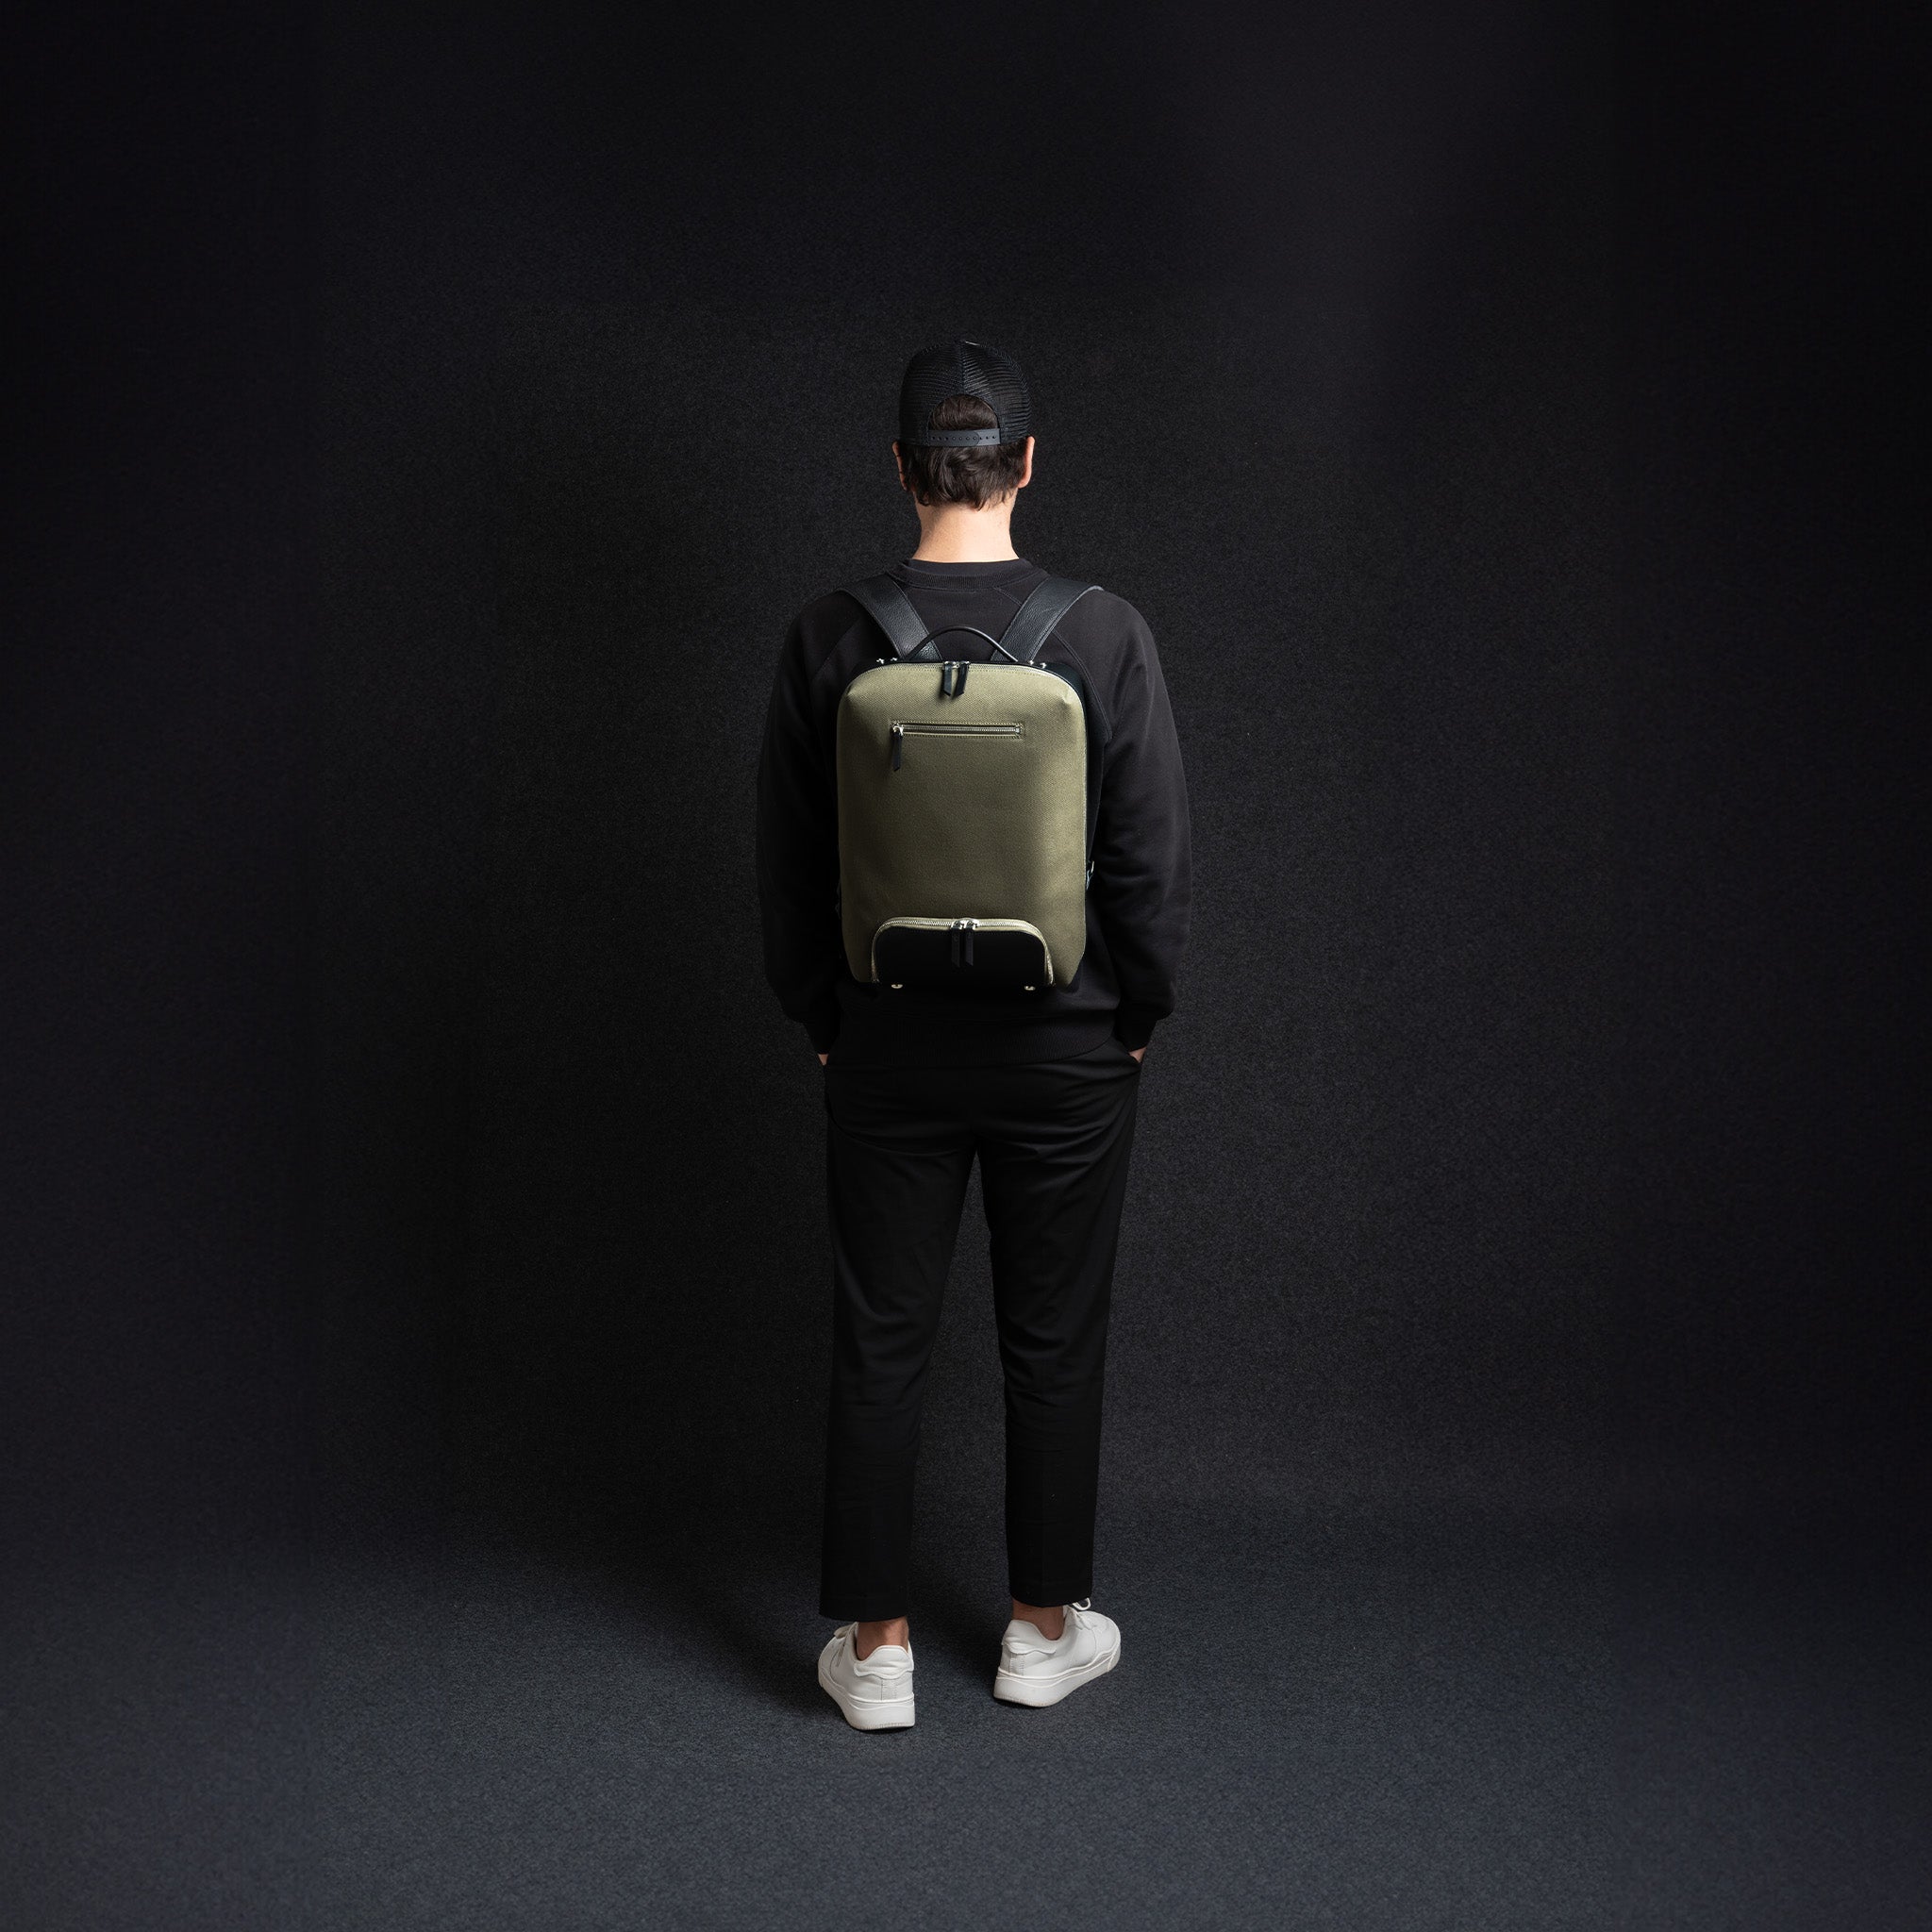 Sac à dos ordinateur portable en toile et cuir pour homme. Ce sac à dos est conçu pour offrir confort et protection à votre équipement. Son design moderne et élégant est parfait pour le travail.